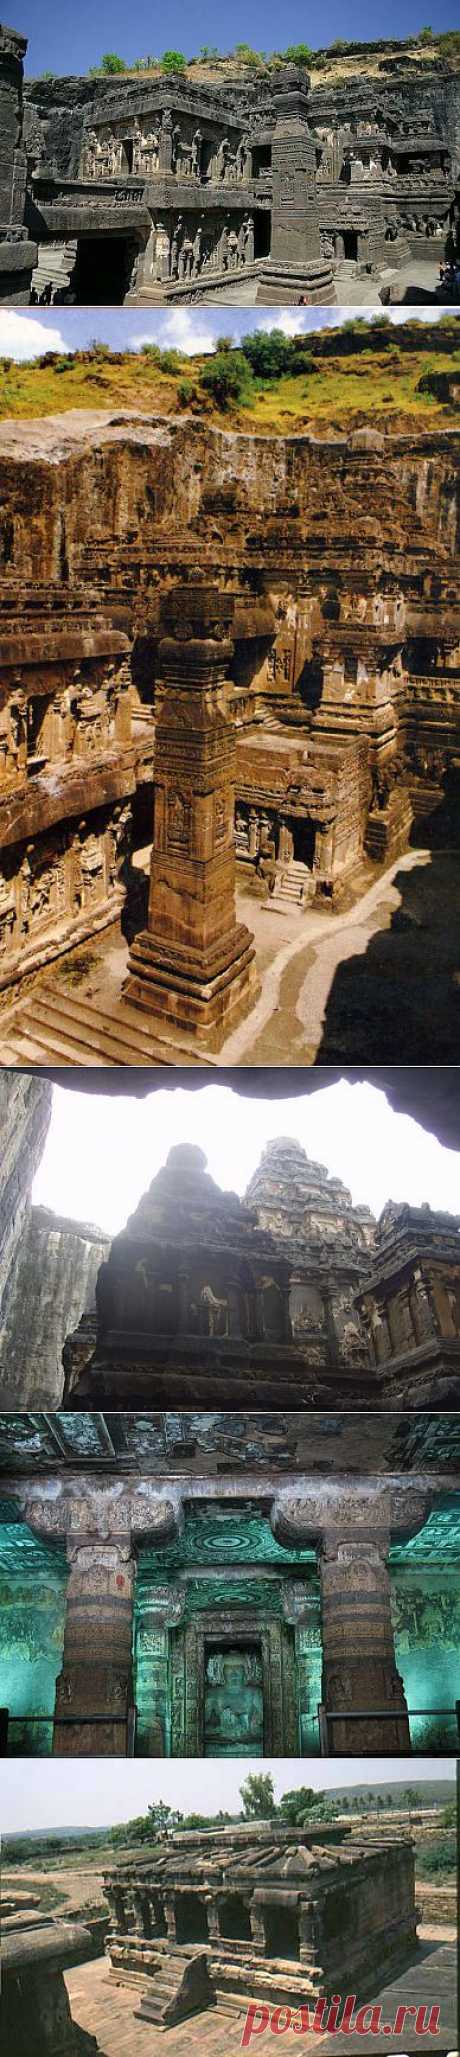 (+1) тема - Пещерные храмы Индии | ТУРИЗМ И ОТДЫХ